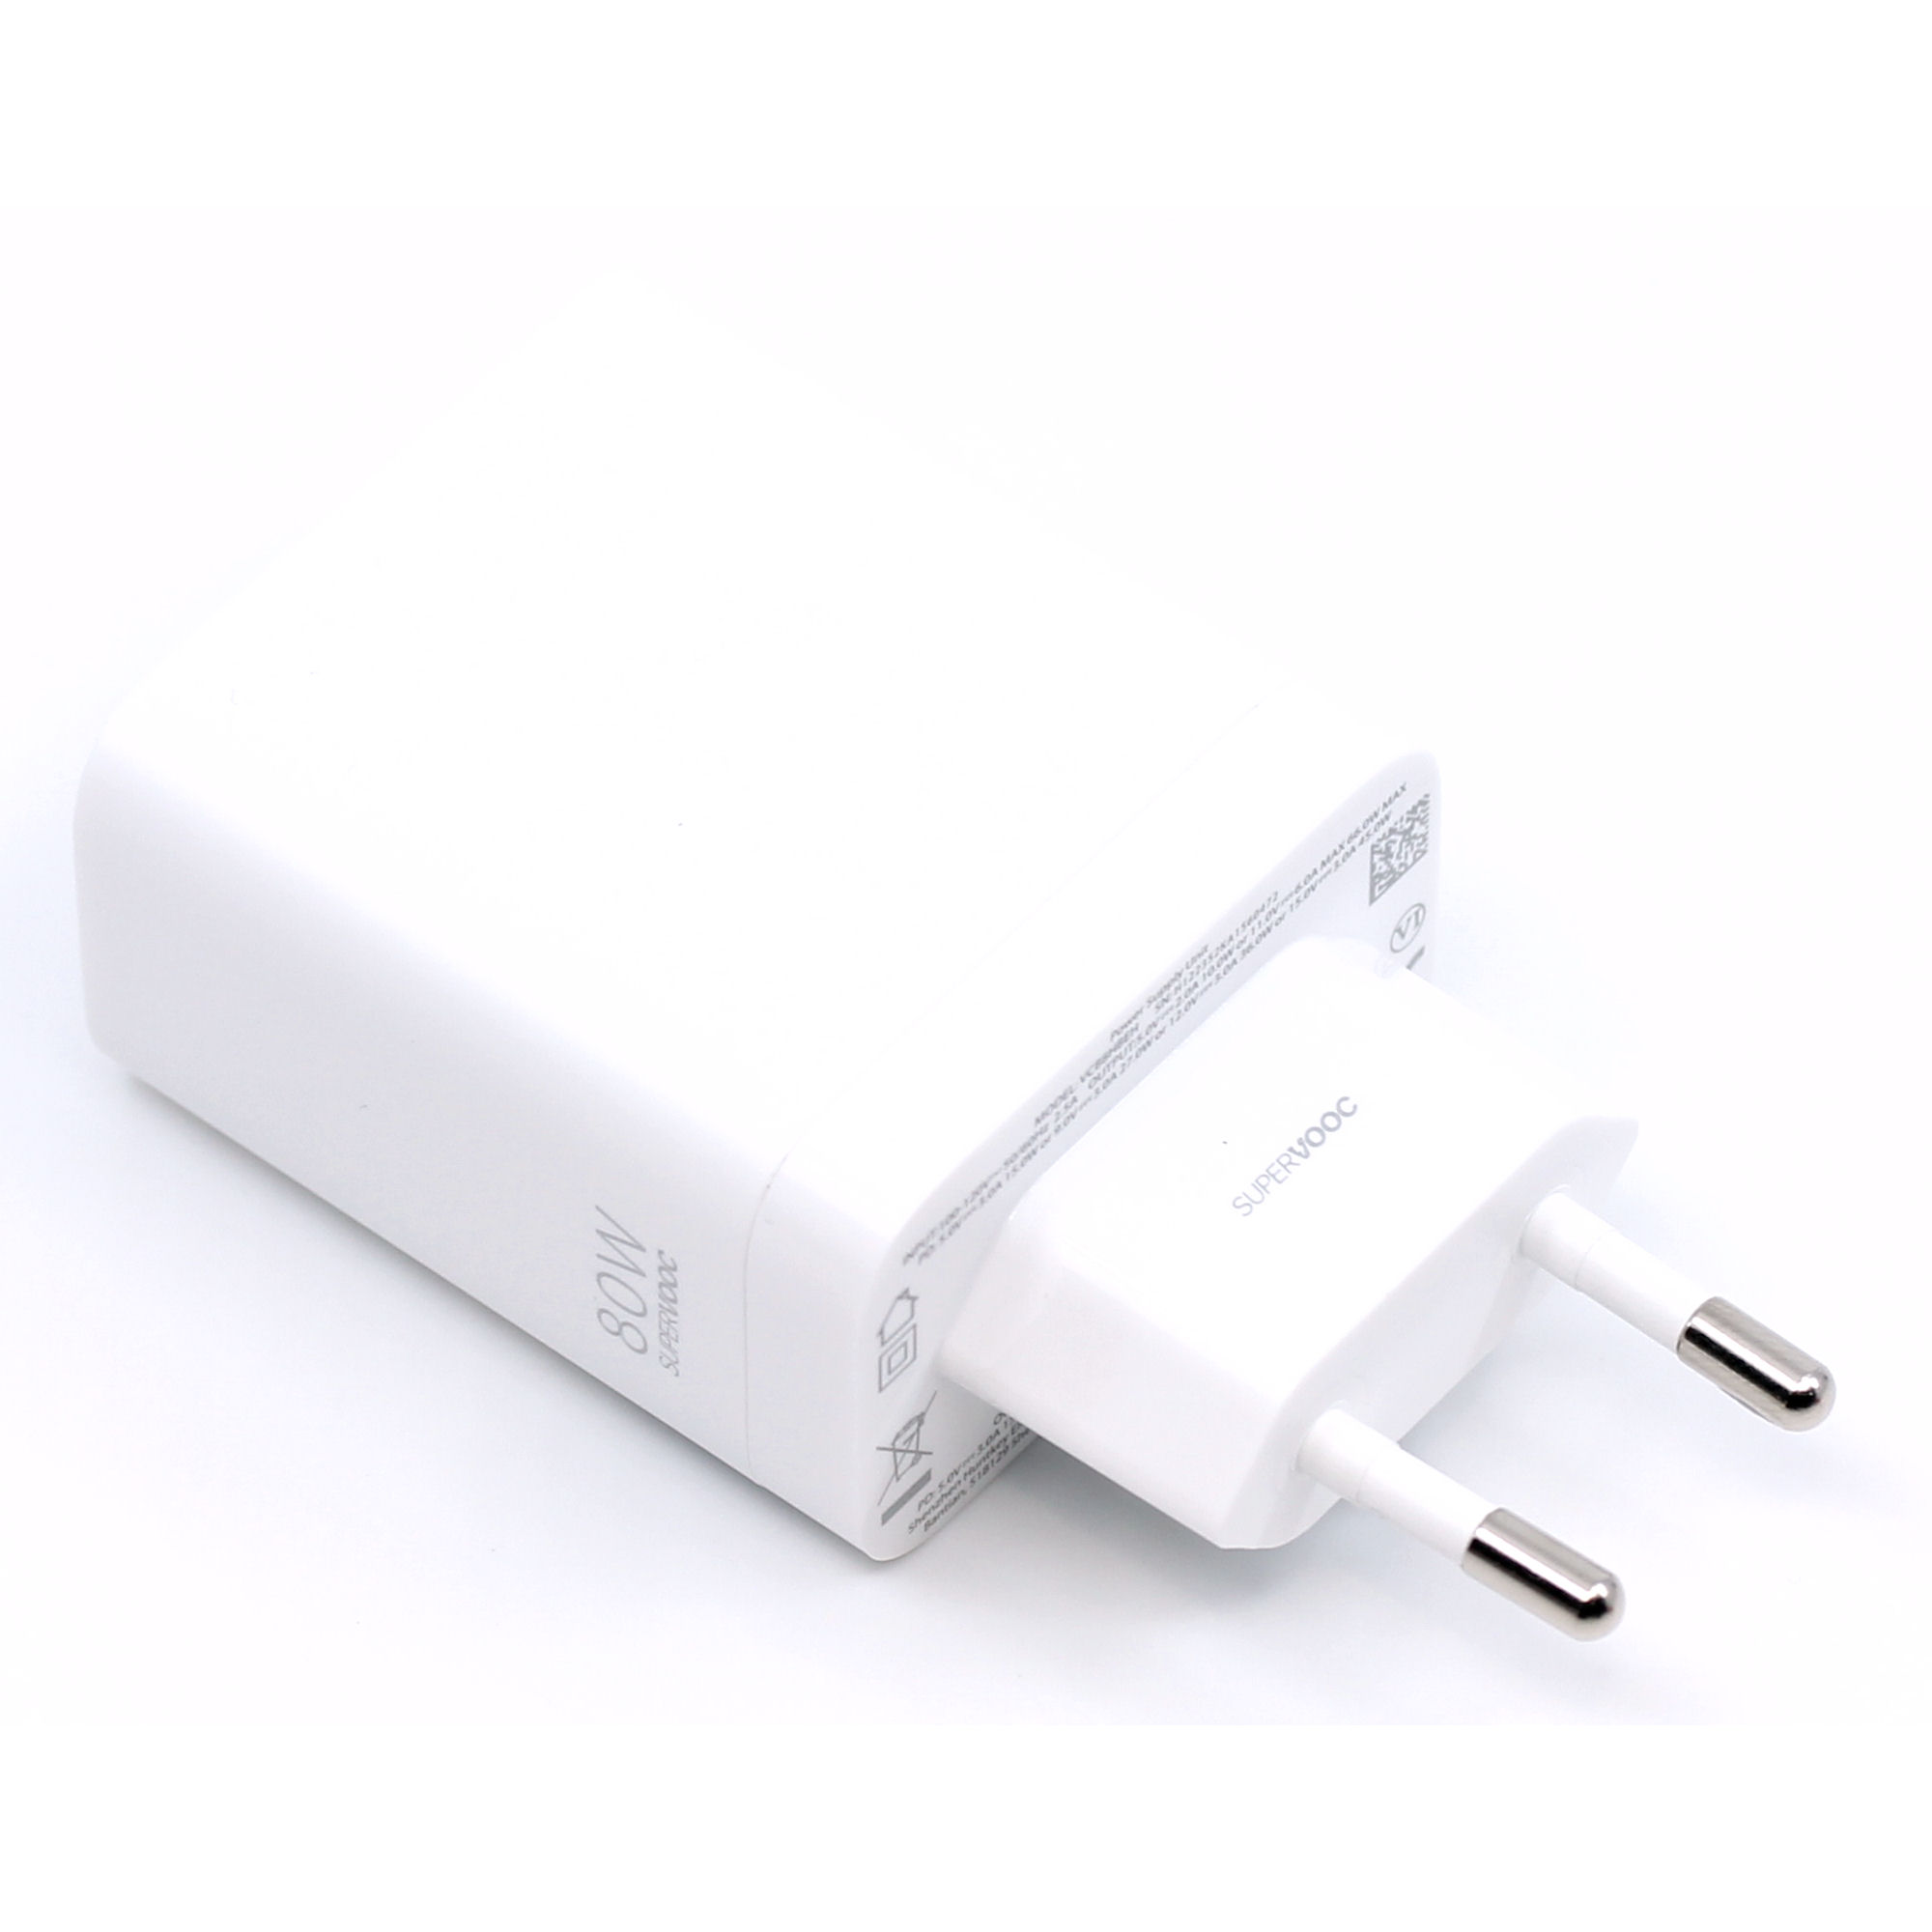 OnePlus Ladegerät 5461100248 80W USB Typ-C SUPERVOOC GaN mit Kabel weiß